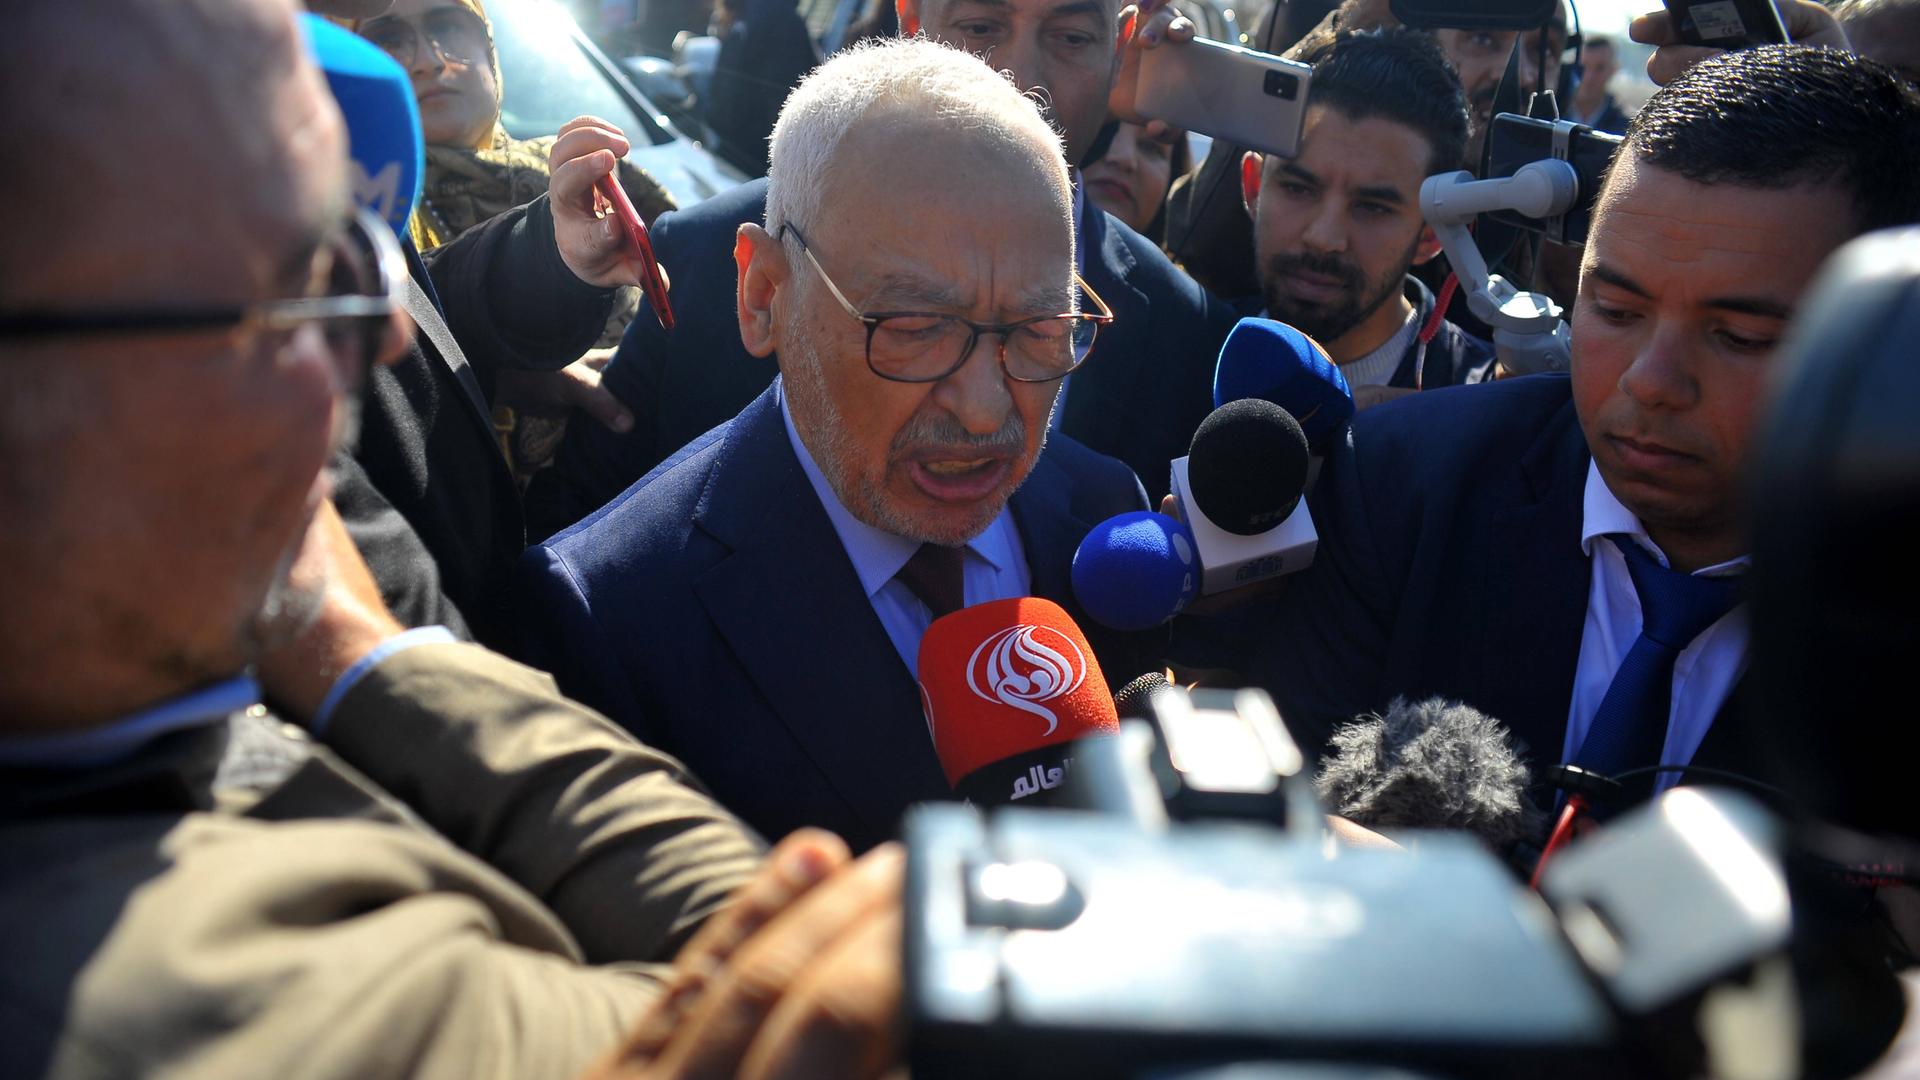 Der Vorsitzende der muslimisch-konservativen Ennahda-Partei, Ghannouchi, ist umringt von Reportern, die ihm Mikrofone entgegenhalten.